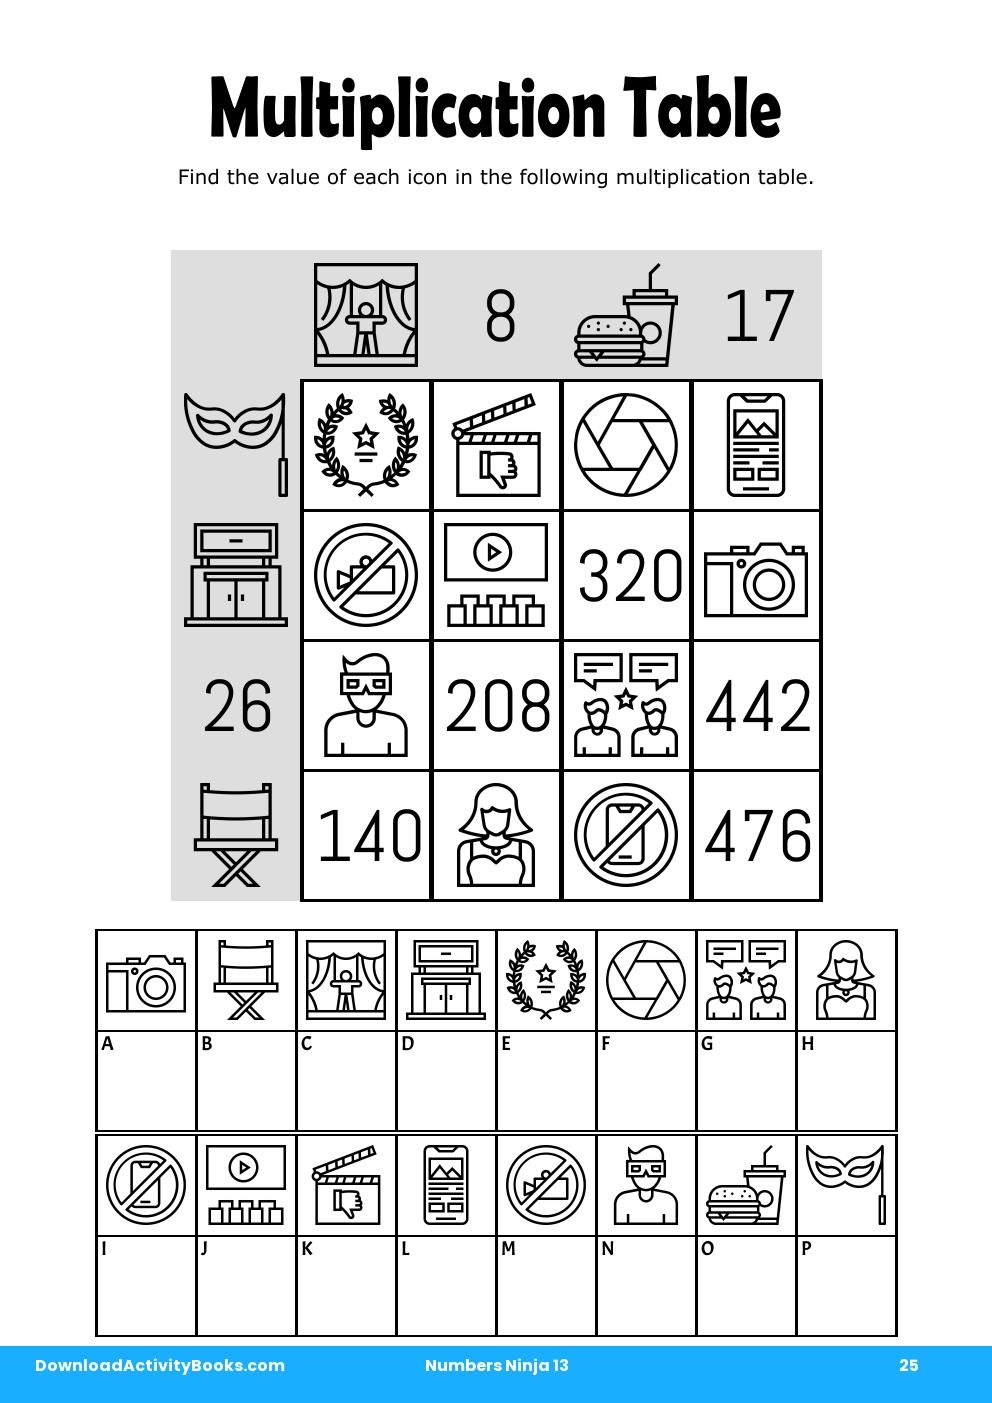 Multiplication Table in Numbers Ninja 13